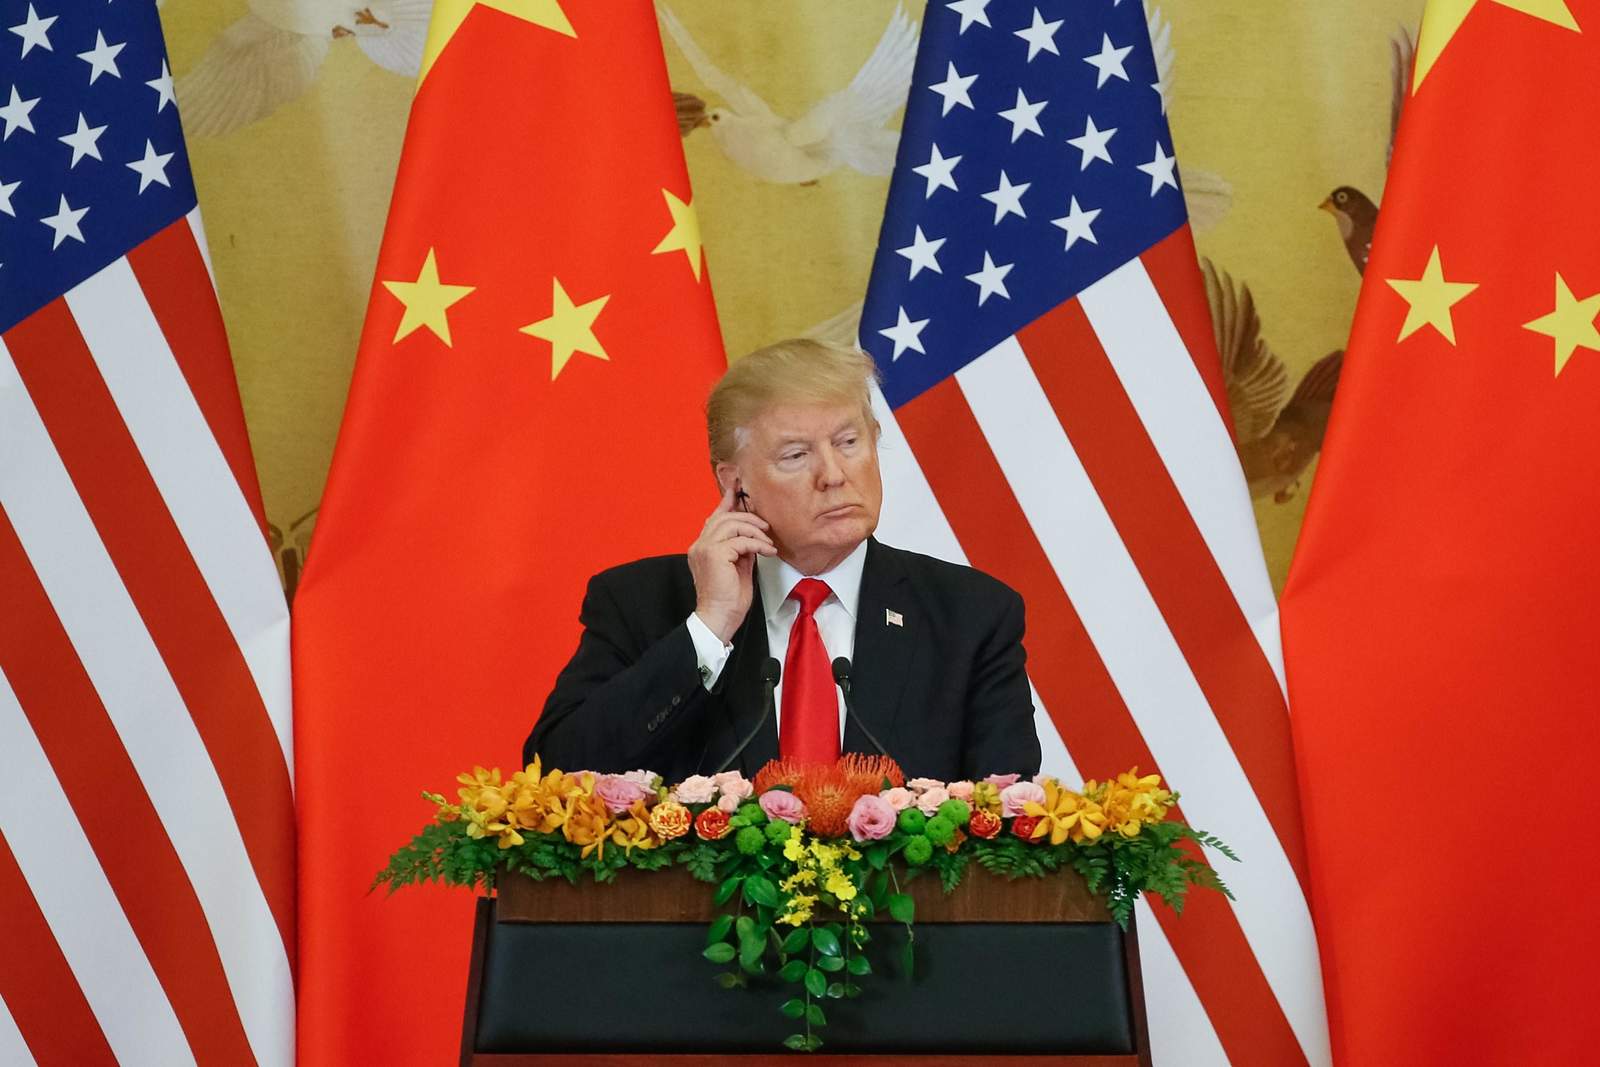 Quiere Trump dialogar con Xi Jinping y Putin